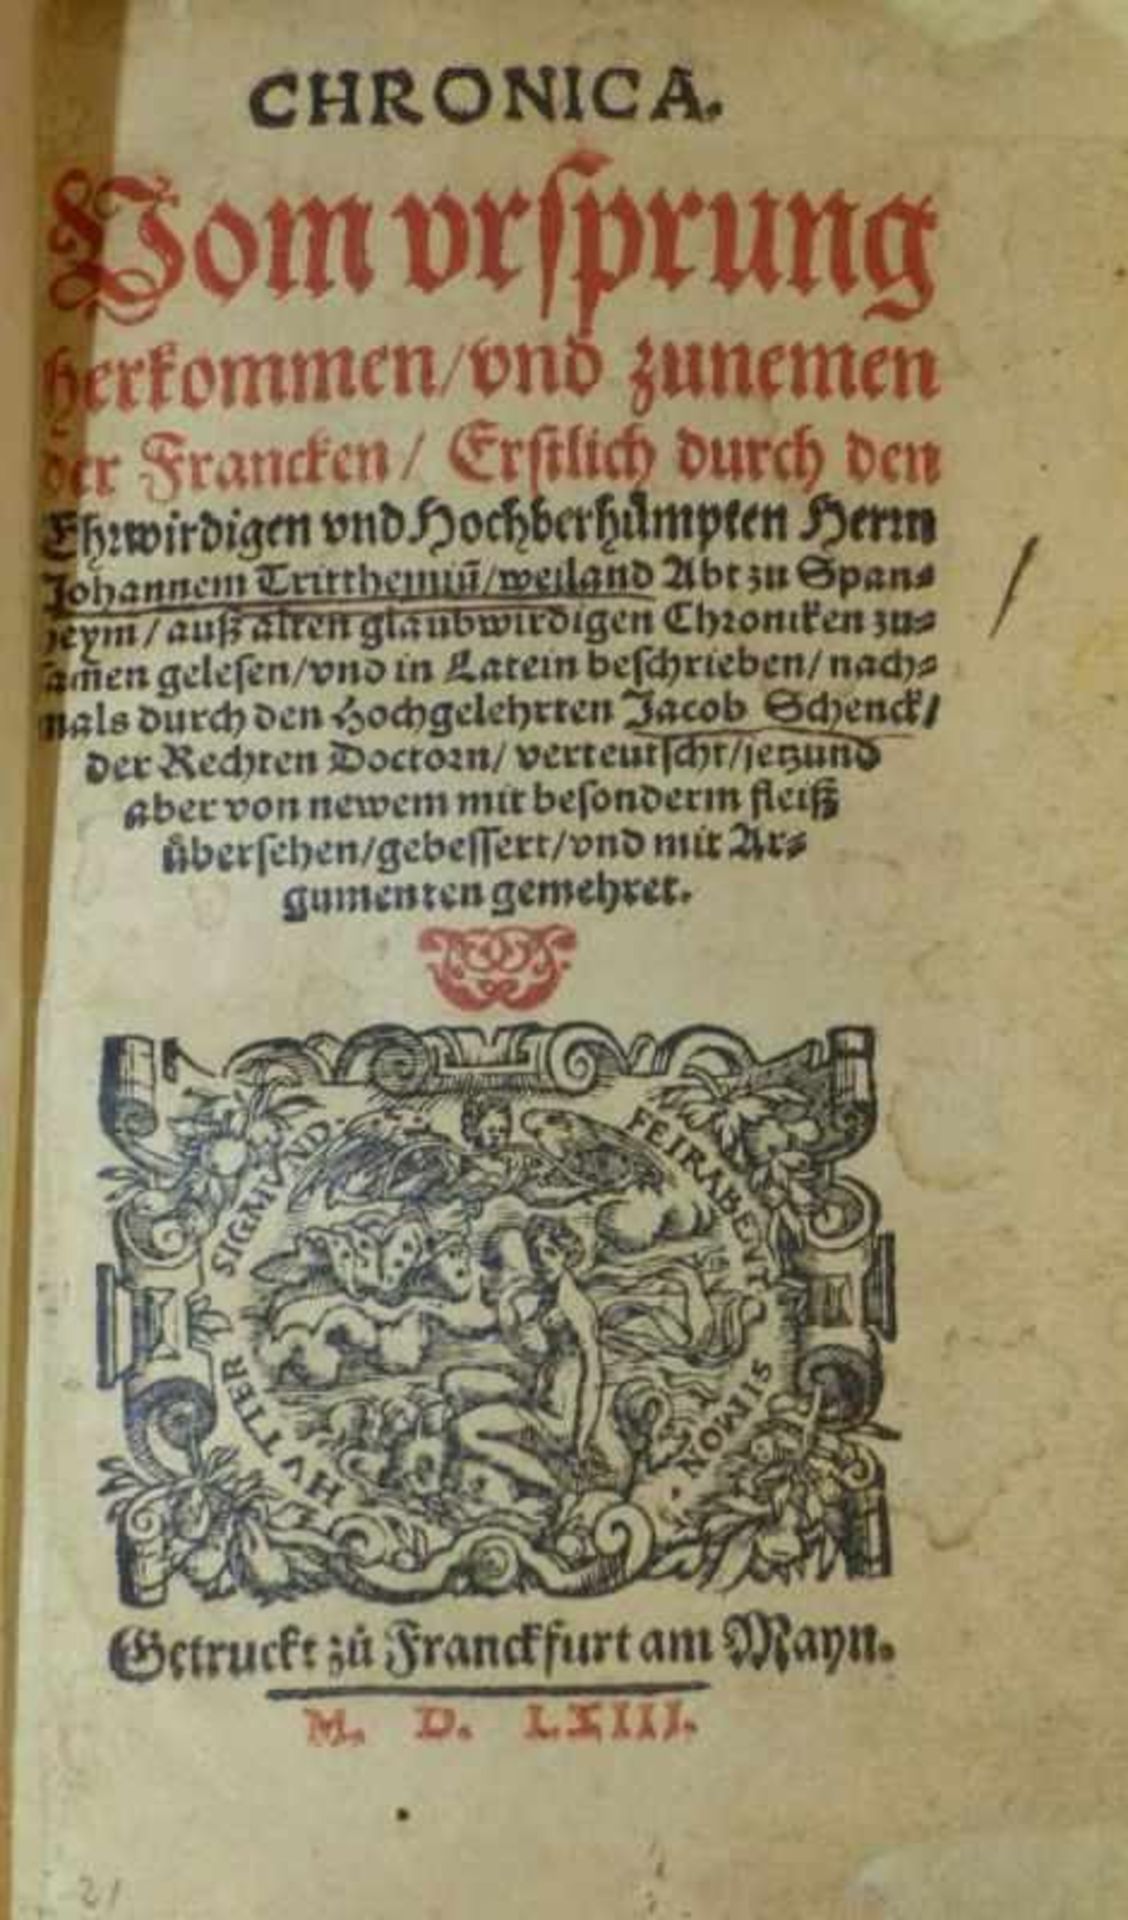 Trithemius, Johannes und Jacobus Schenck Chronica vom Ursprung, Herkommen und Zunemen der Francken